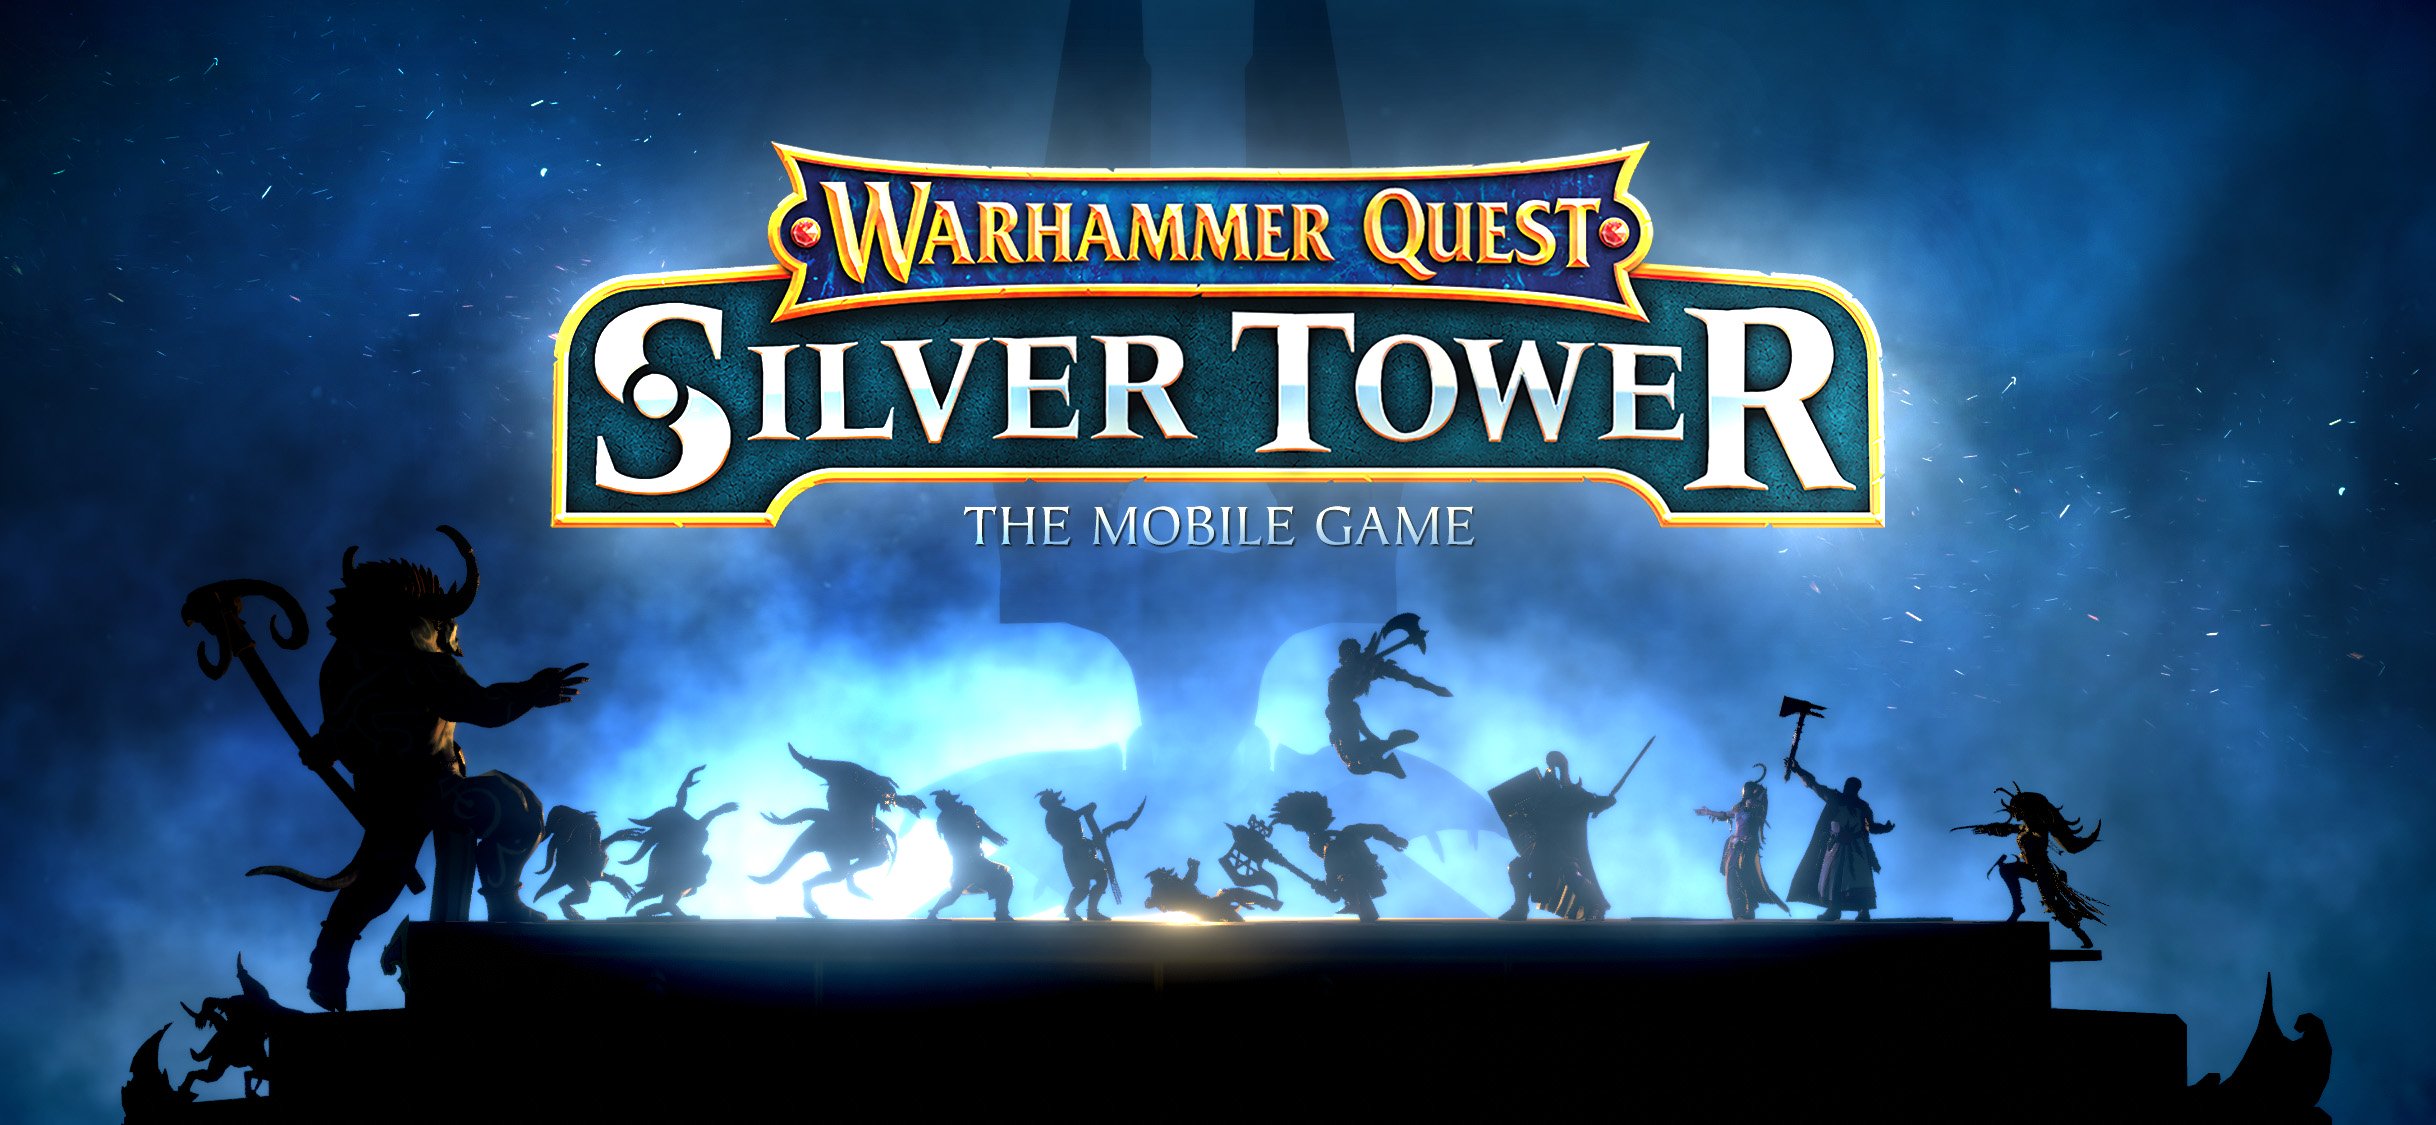 ‘Quest Warhammer: Silver Tower 'dari Perchang Membawa Aksi Strategi Berbasis Giliran ke iOS dan Android Akhir Tahun Ini